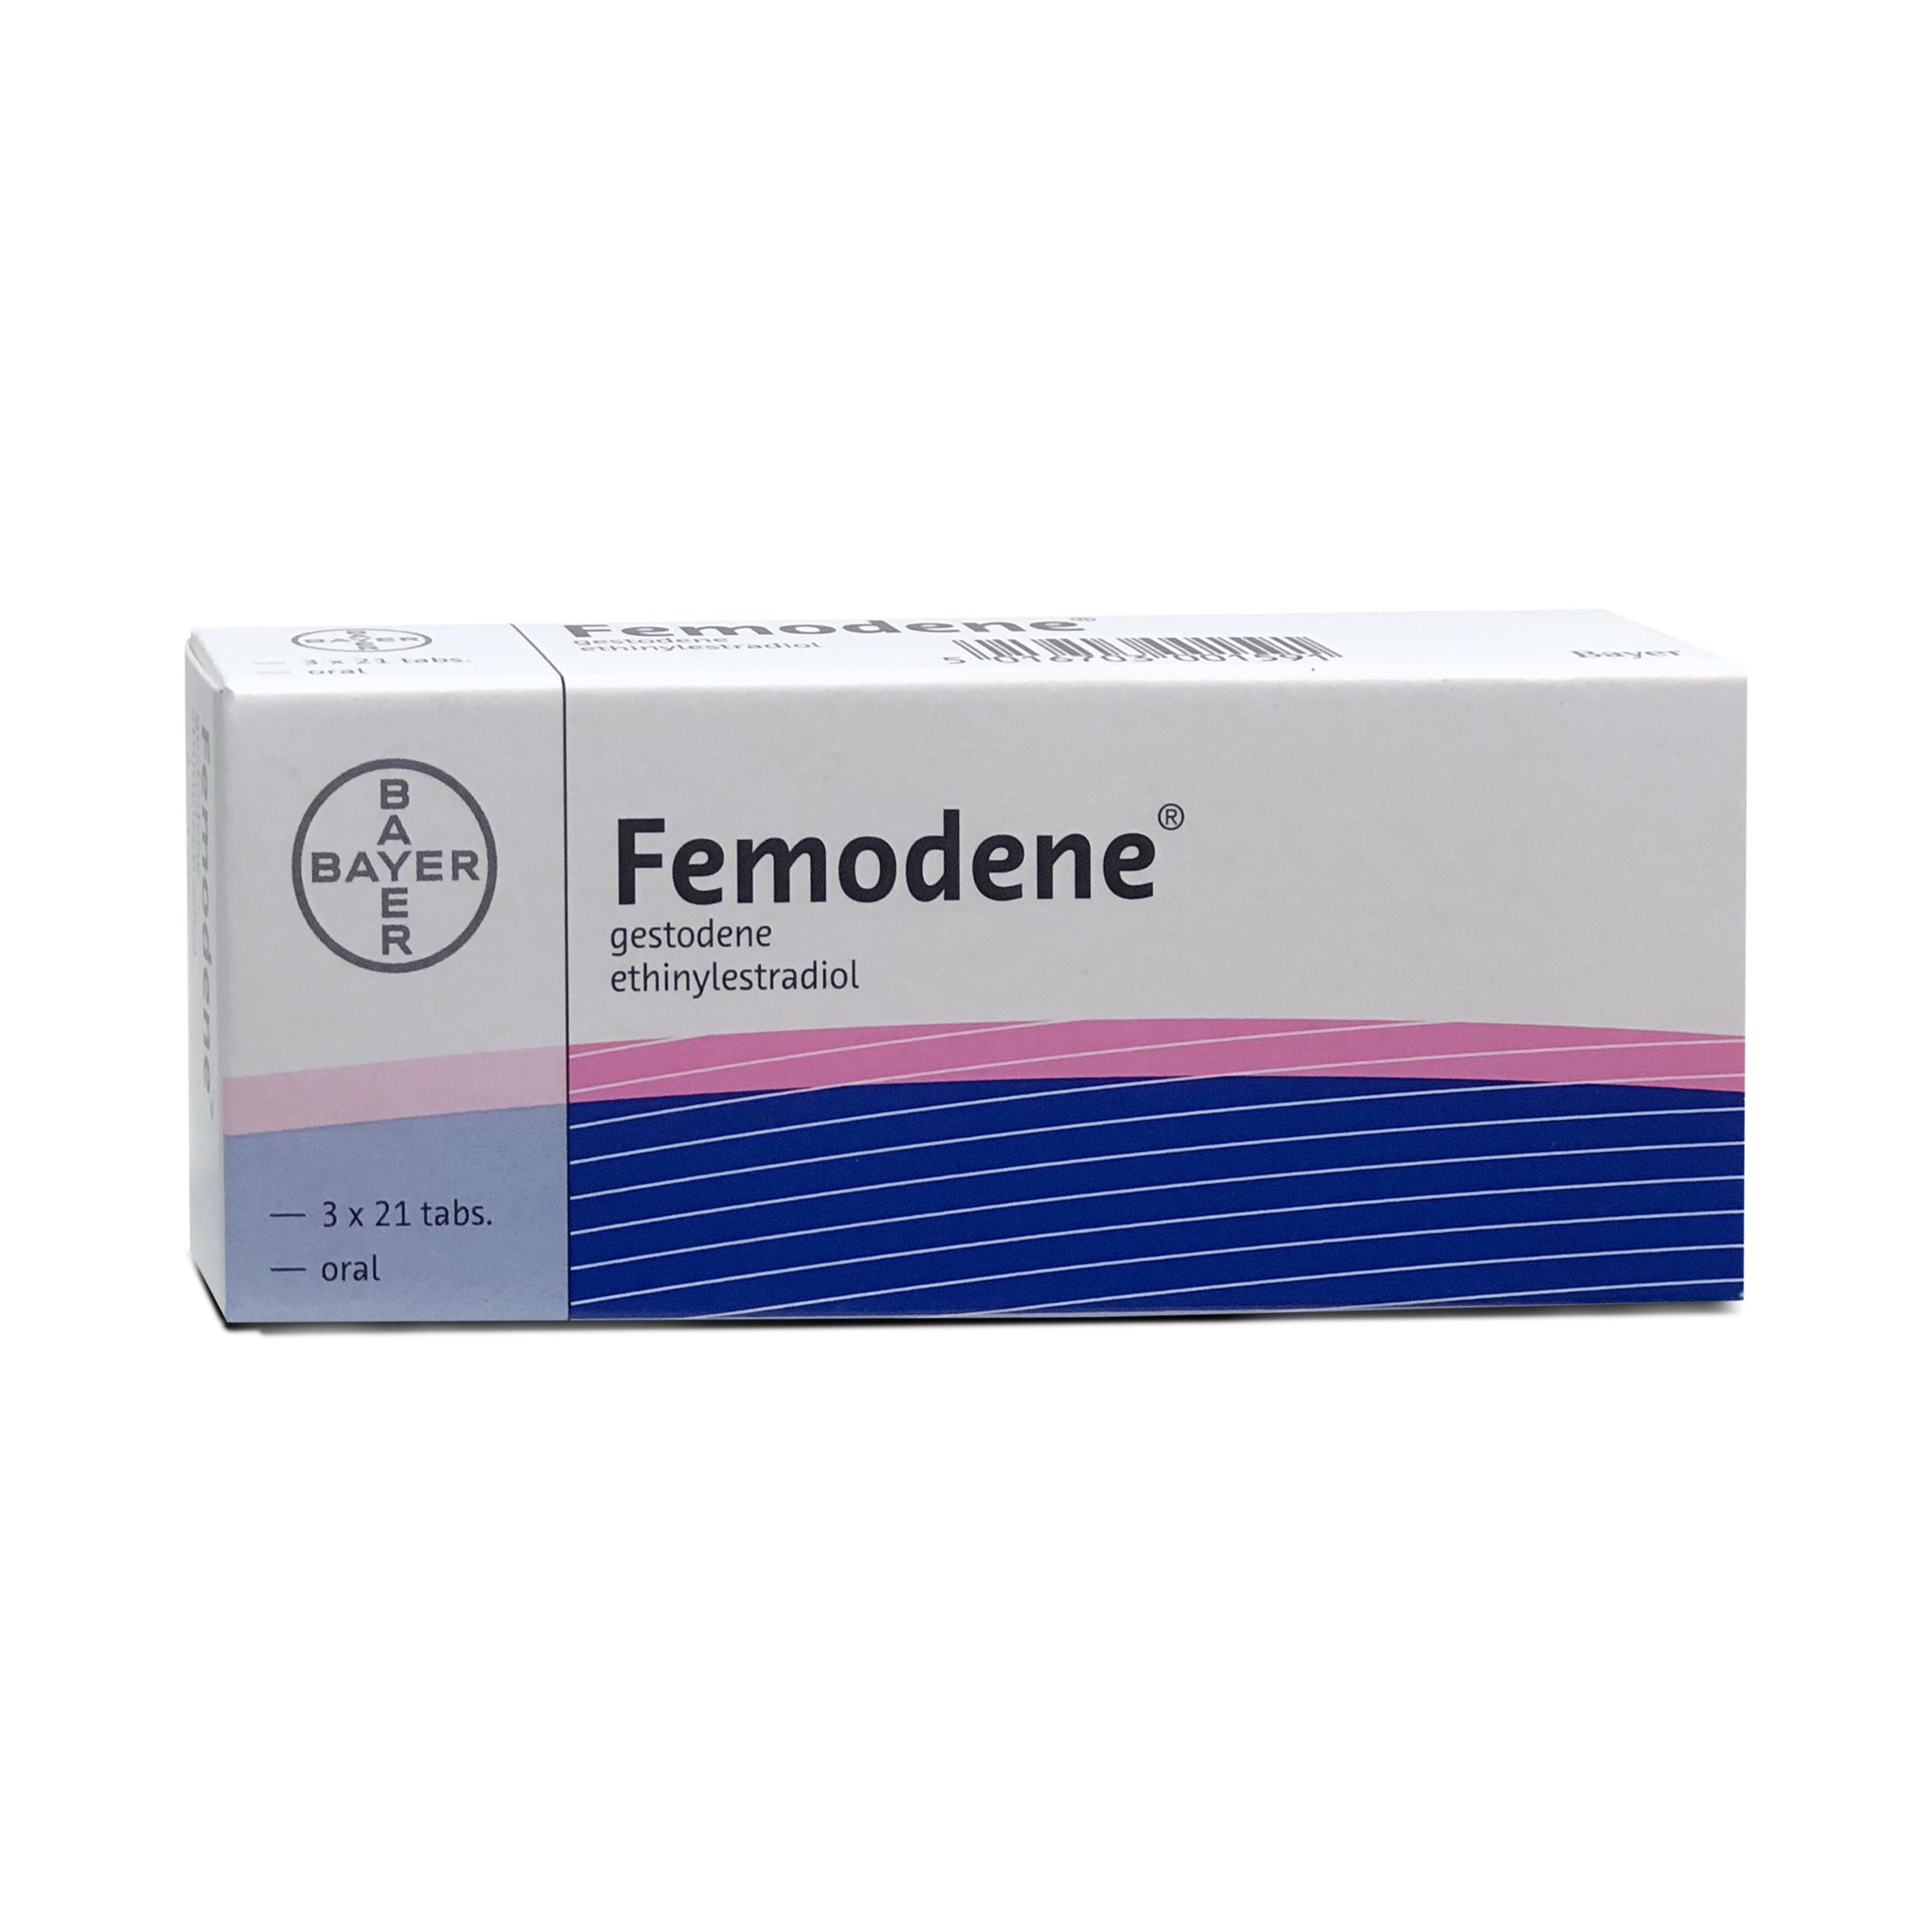 Femodene 3 x 21 tablets Bayer